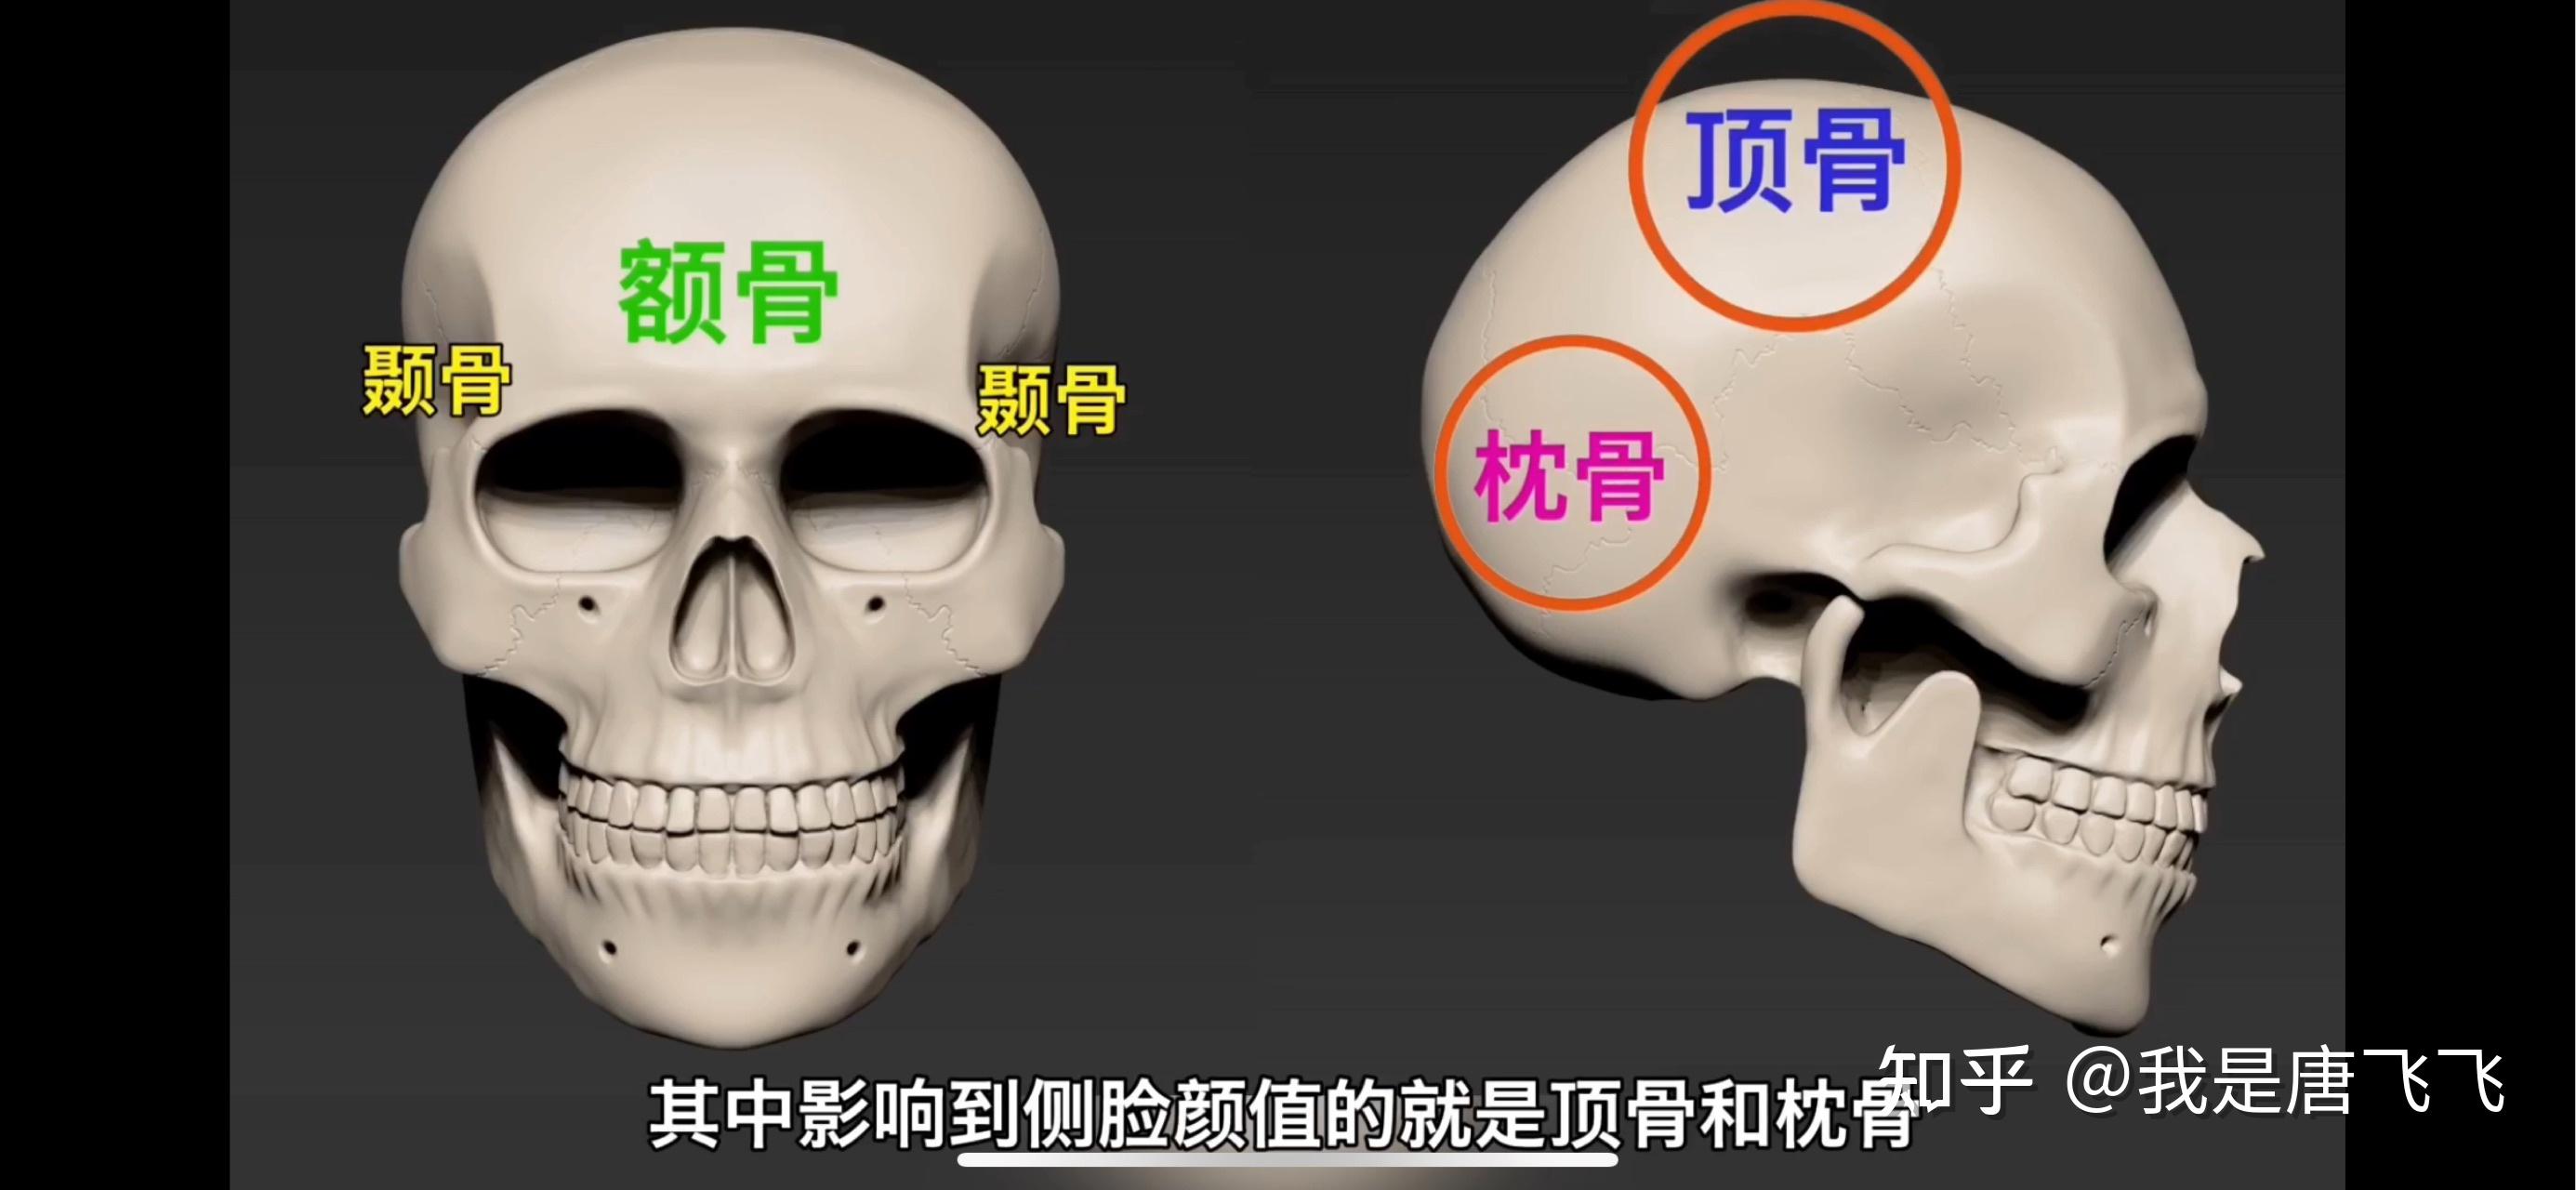 我们的头盖骨主要由4种骨头构成,分别是顶骨,枕骨,额骨和颞骨,其中